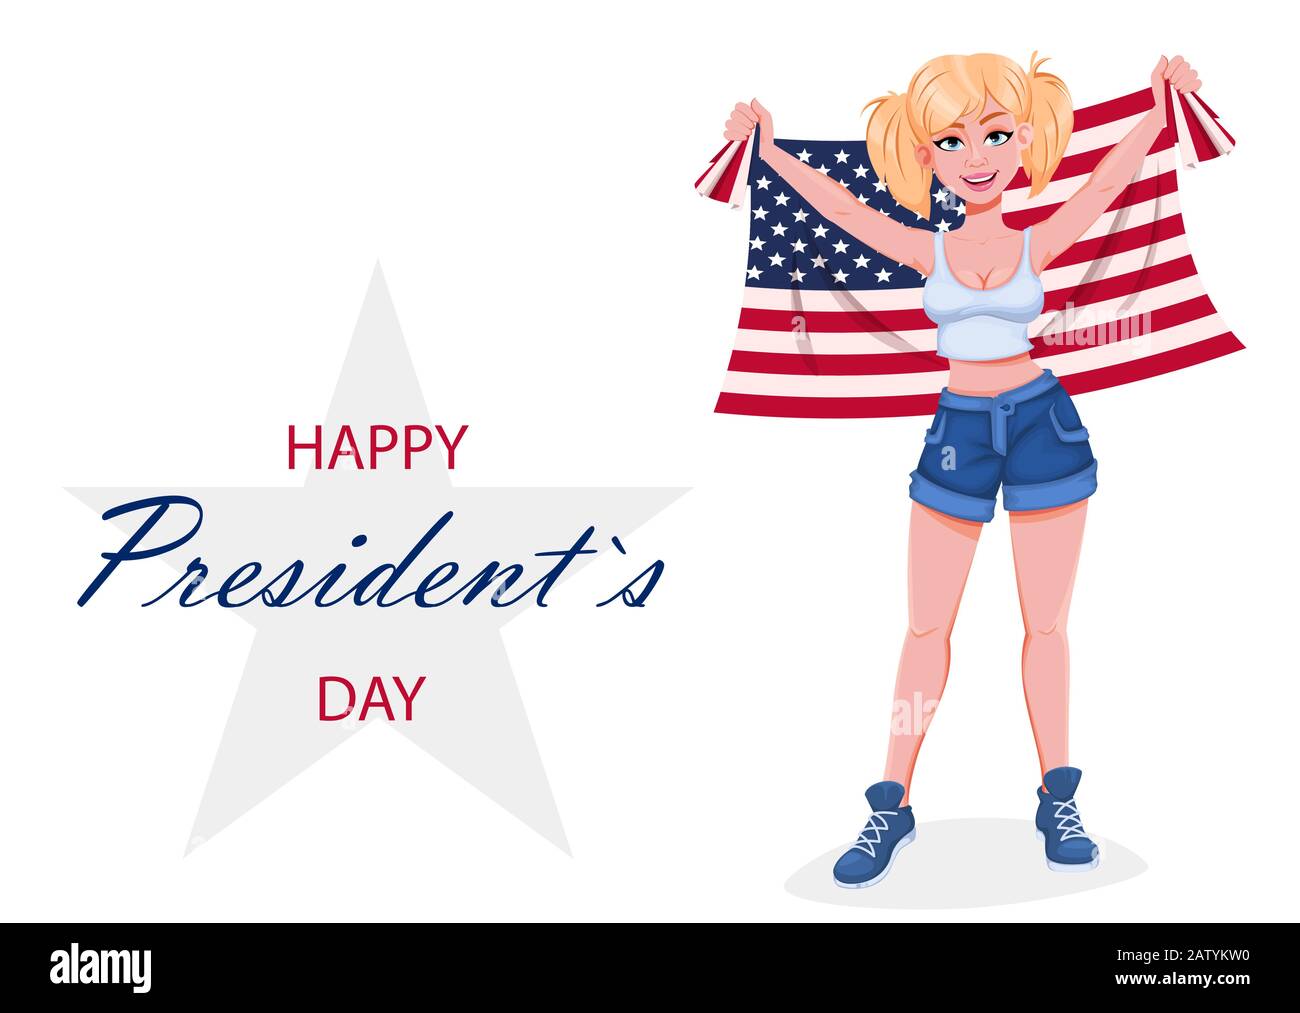 Glückwunschkarte für den Tag des Präsidenten. Schöne Cartoon-Figur für Mädchen, die die Flagge der USA hält. Vektor-Darstellung des Lagerbestands. Stock Vektor